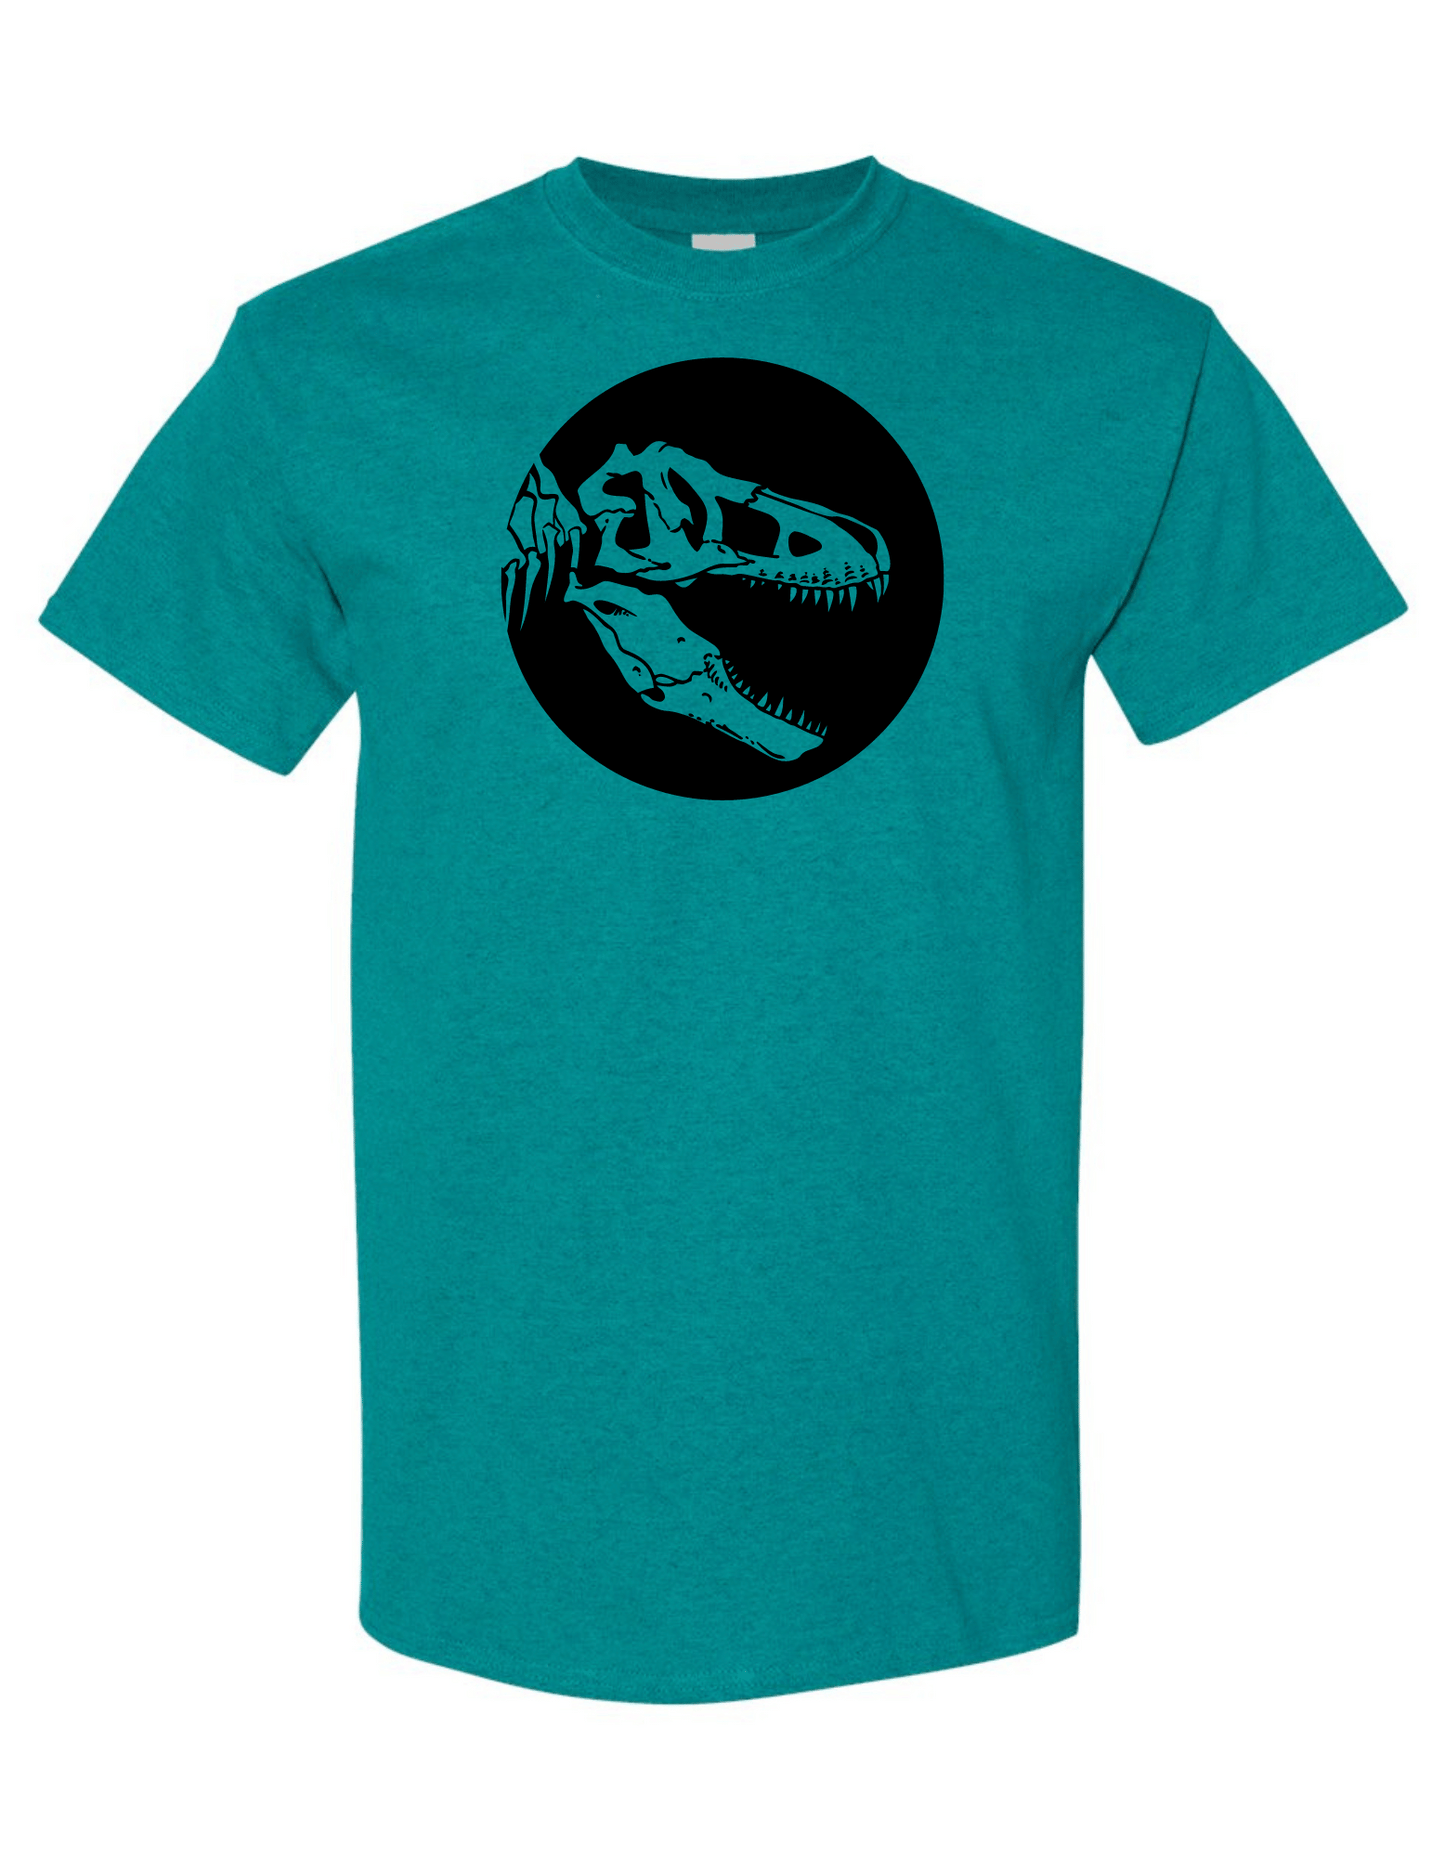 Made to Order Handmade T-Rex Fossil Short Sleeve Shirt